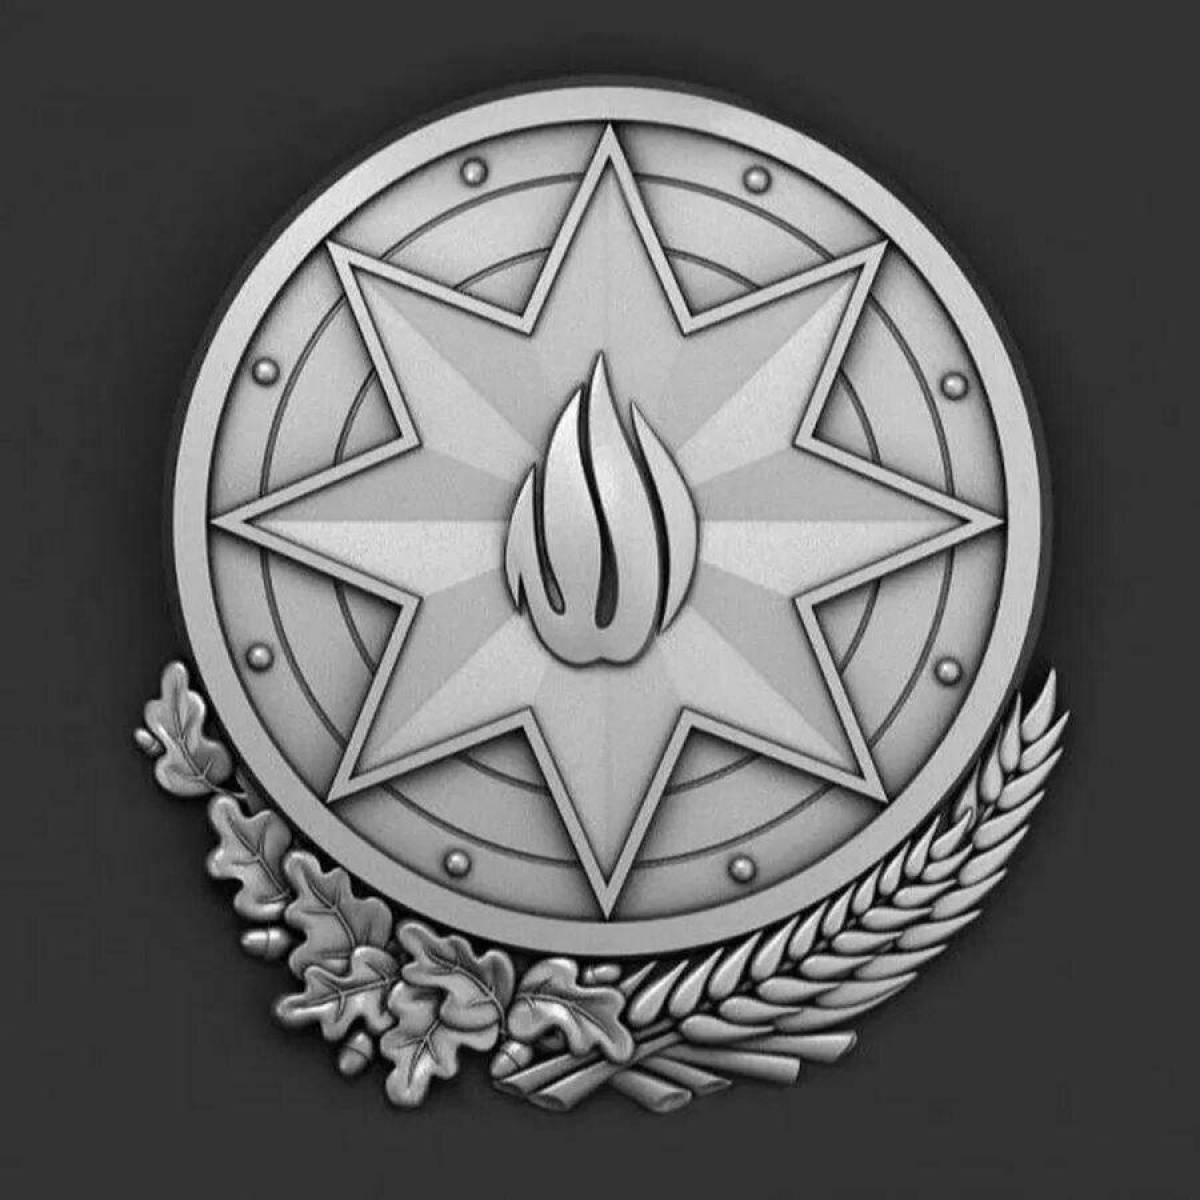 Блестяще детализированный герб азербайджана